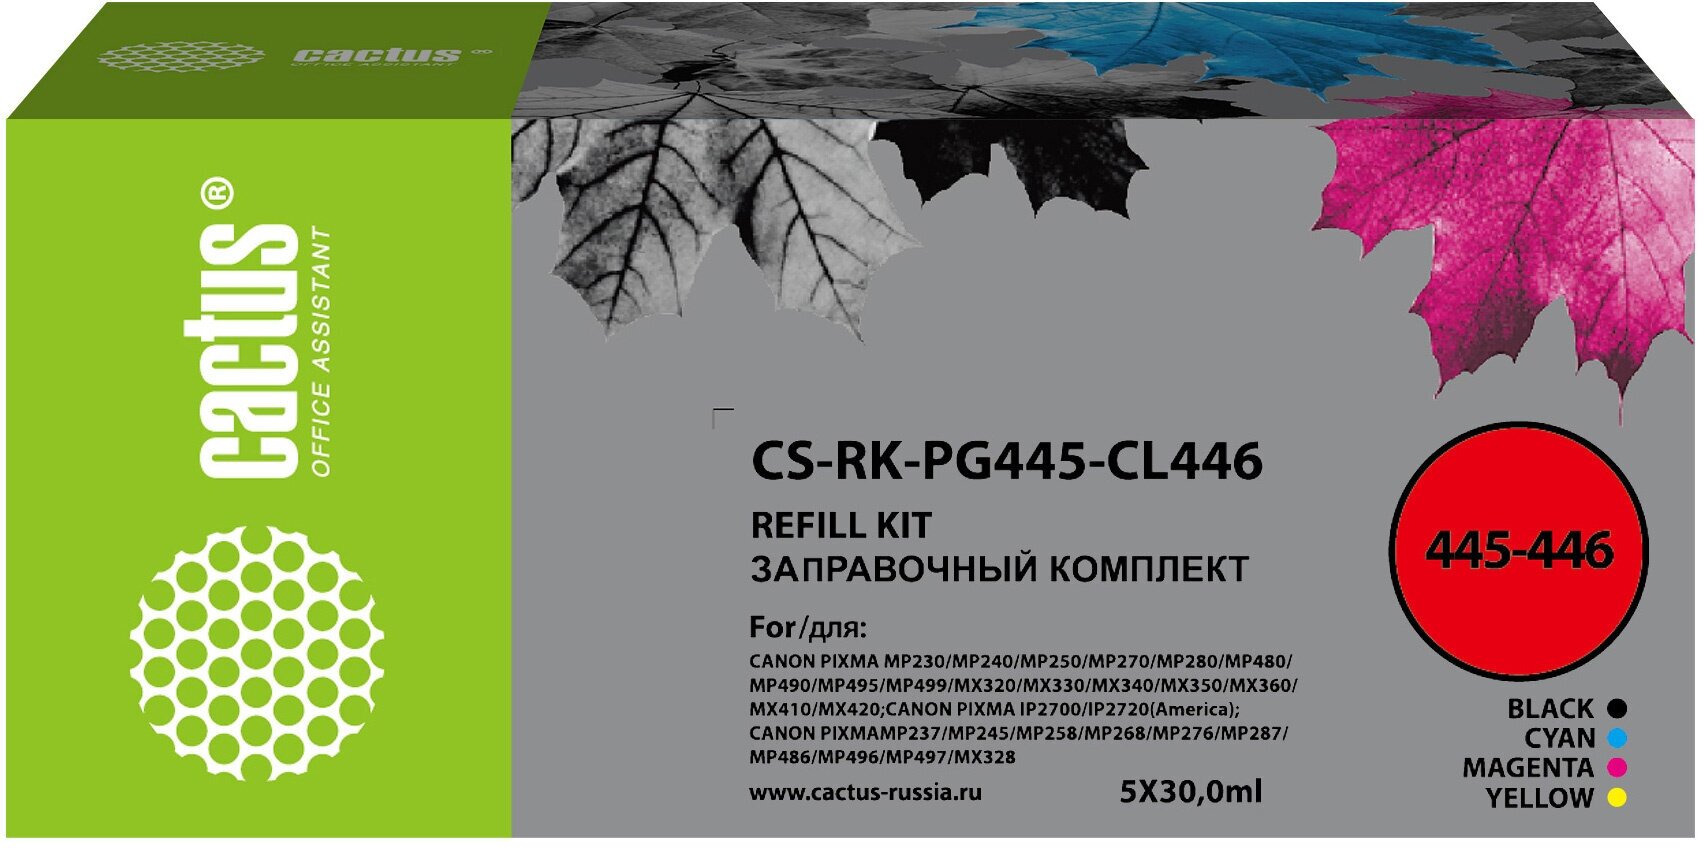 Заправочный набор Cactus CS-RK-PG445-CL446 голубойпурпурныйжелтыйчерный набор 5x30мл для Canon Pixma